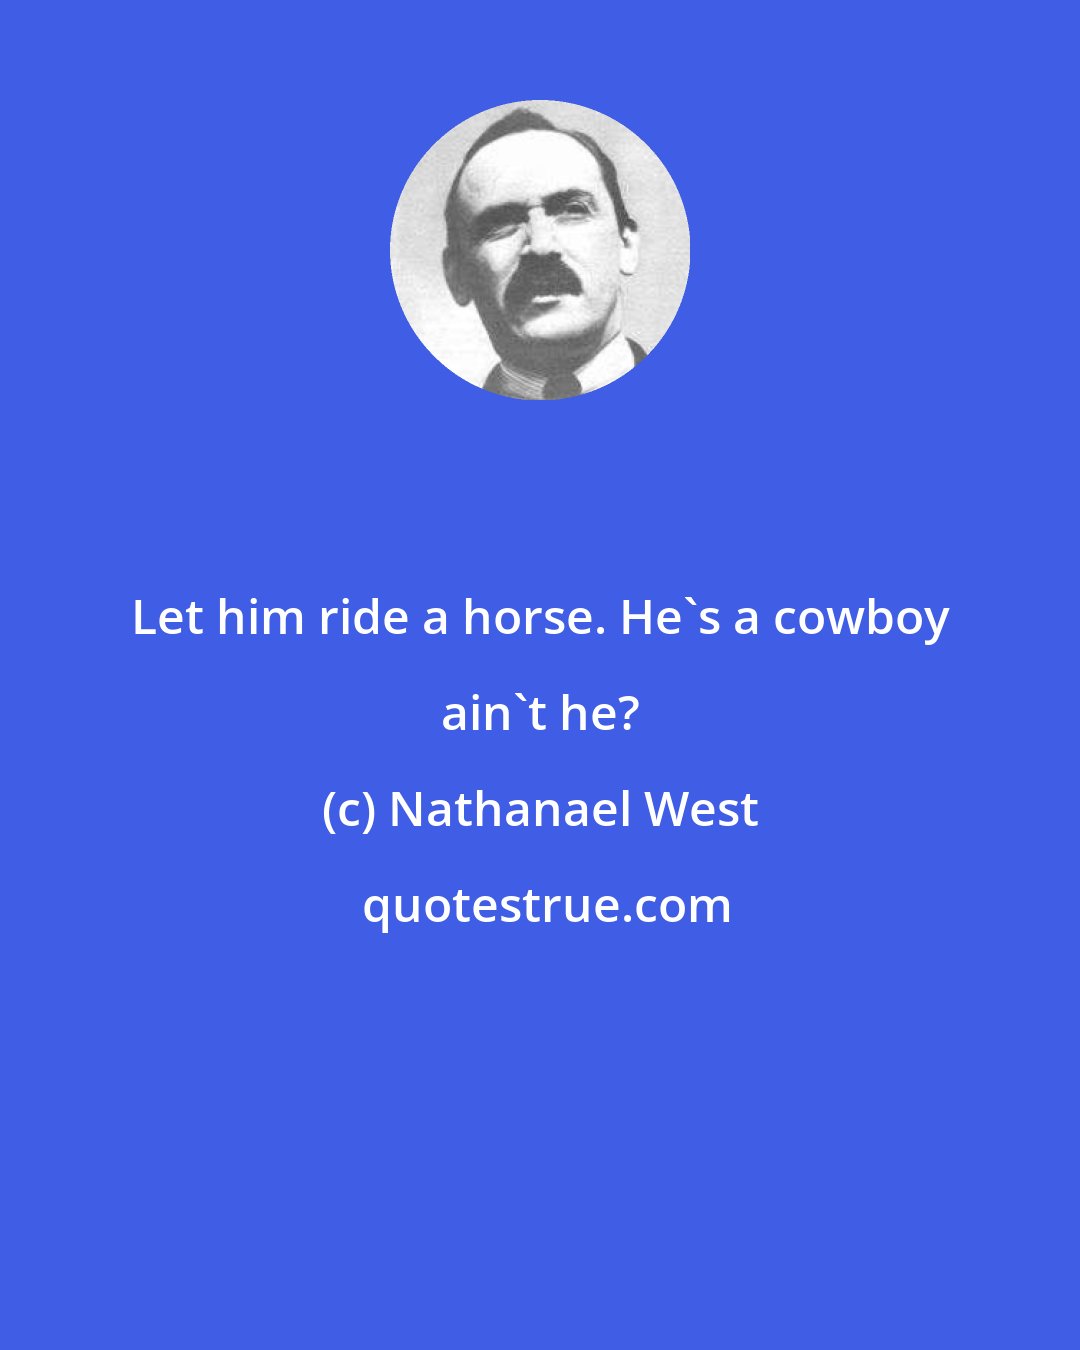 Nathanael West: Let him ride a horse. He's a cowboy ain't he?